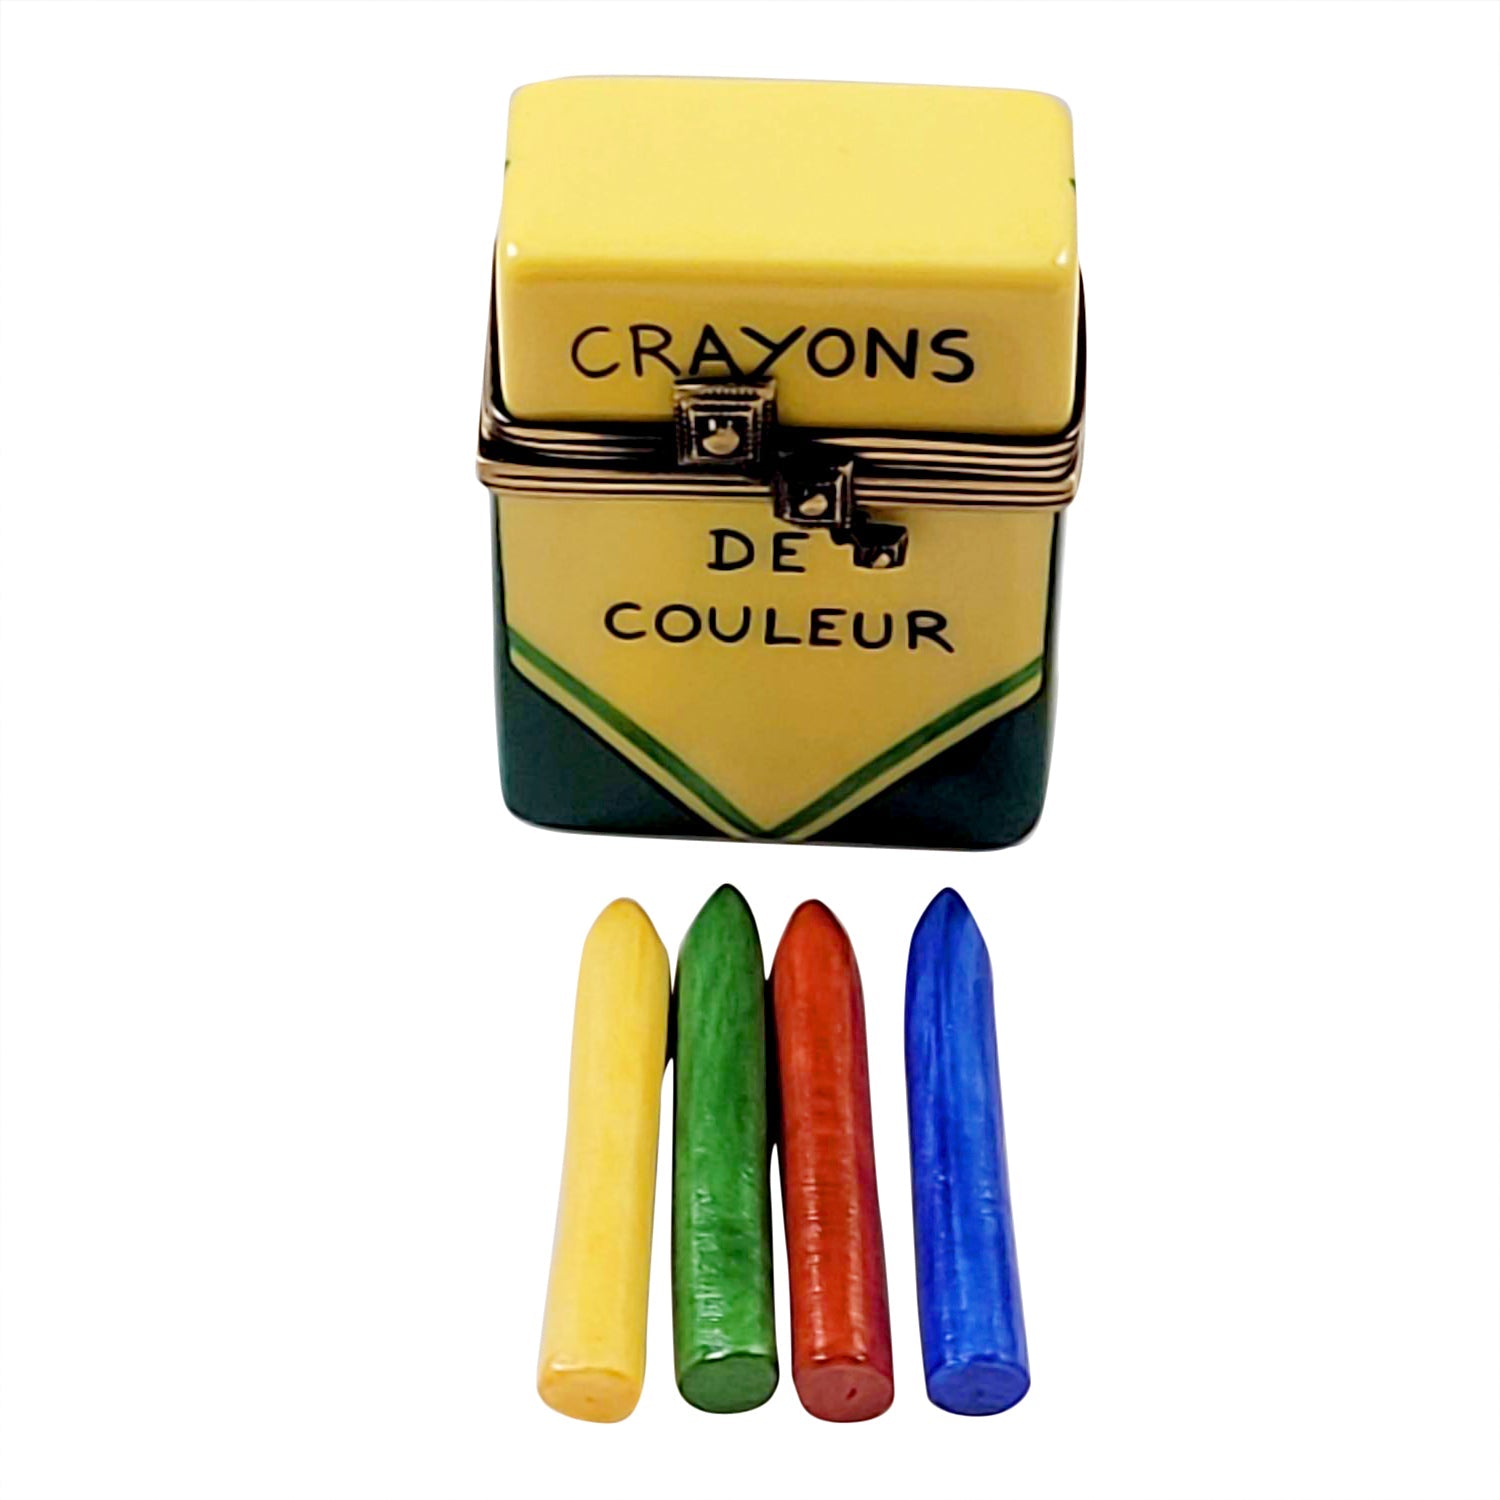 Crayon Box Limoges Porcelain Box